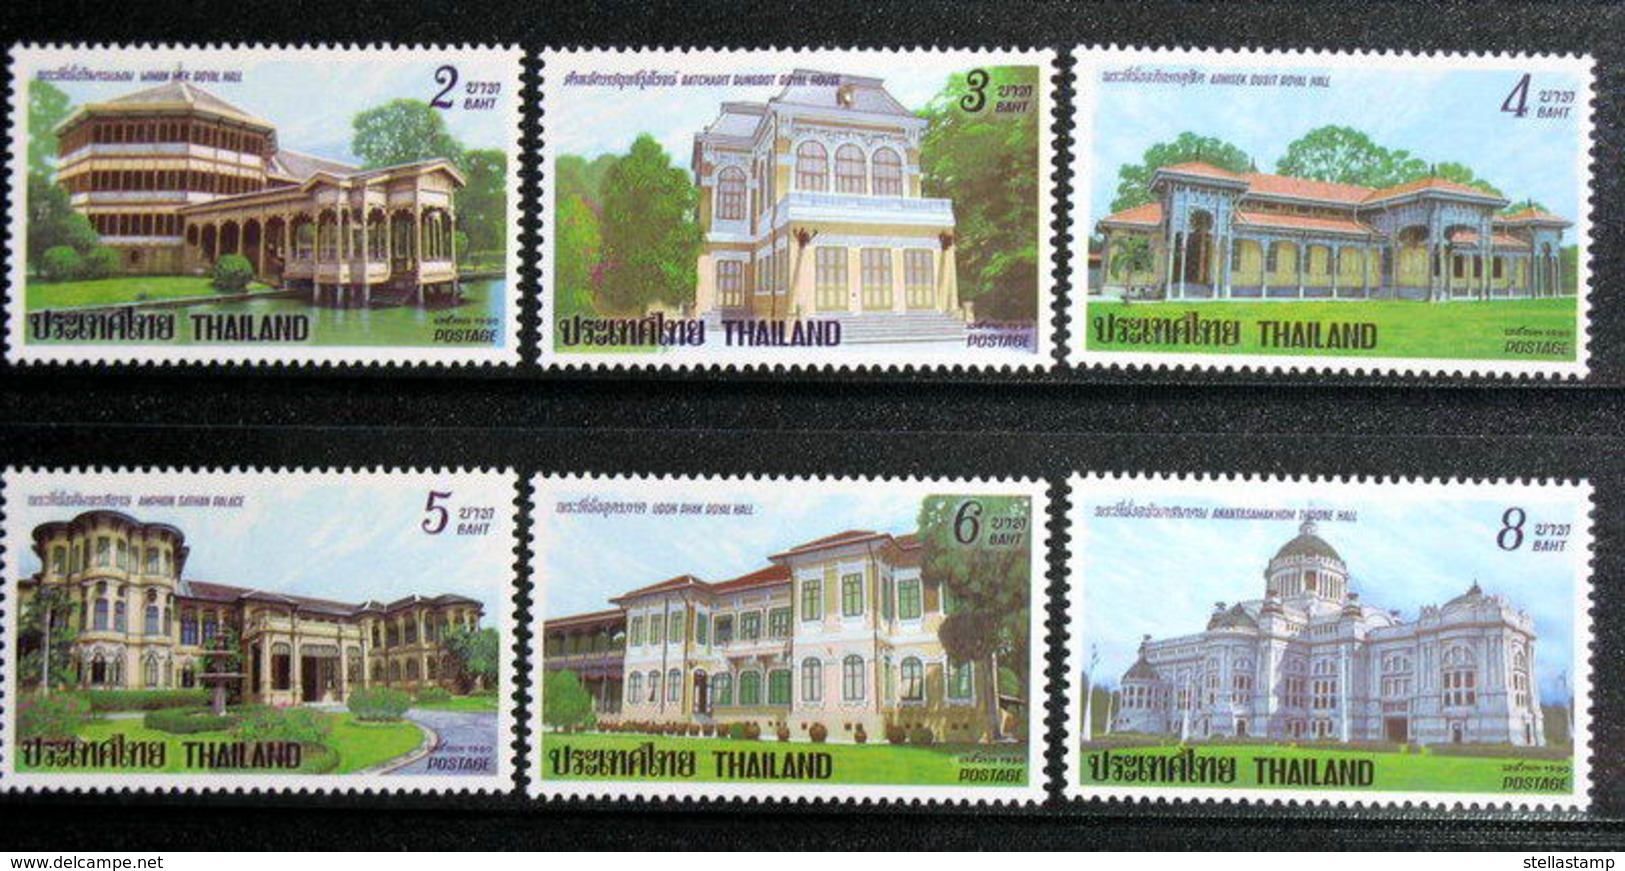 Thailand Stamp 1990 Dusit - Thailand